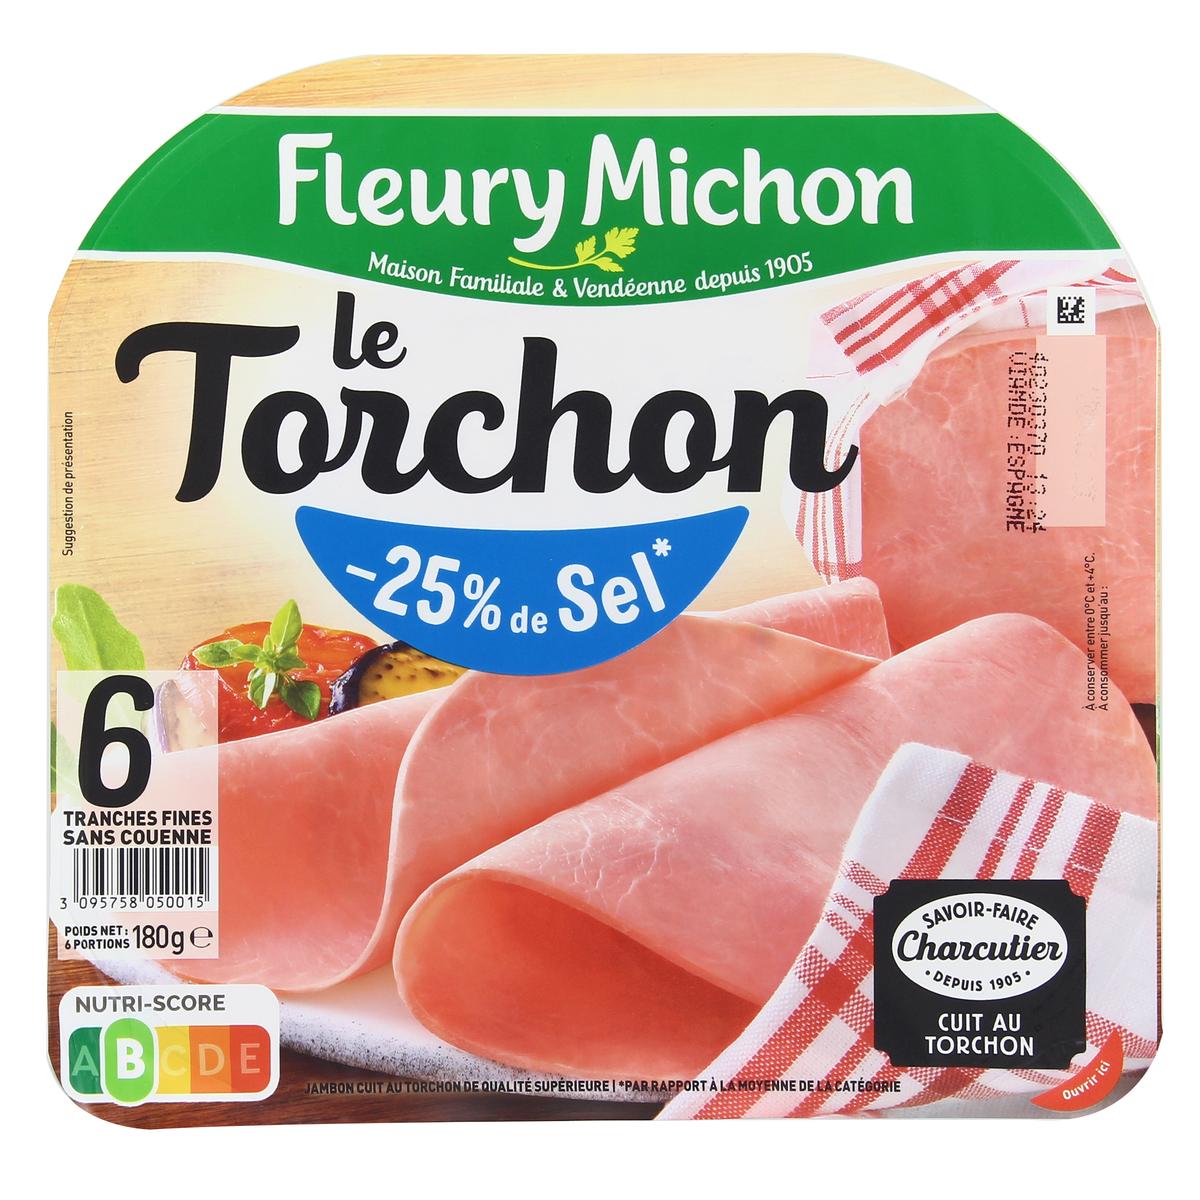 Le Tranché Fin (-25% de sel) (lot 2x4+2 tranches gratuites) - Fleury Michon  - 300 g